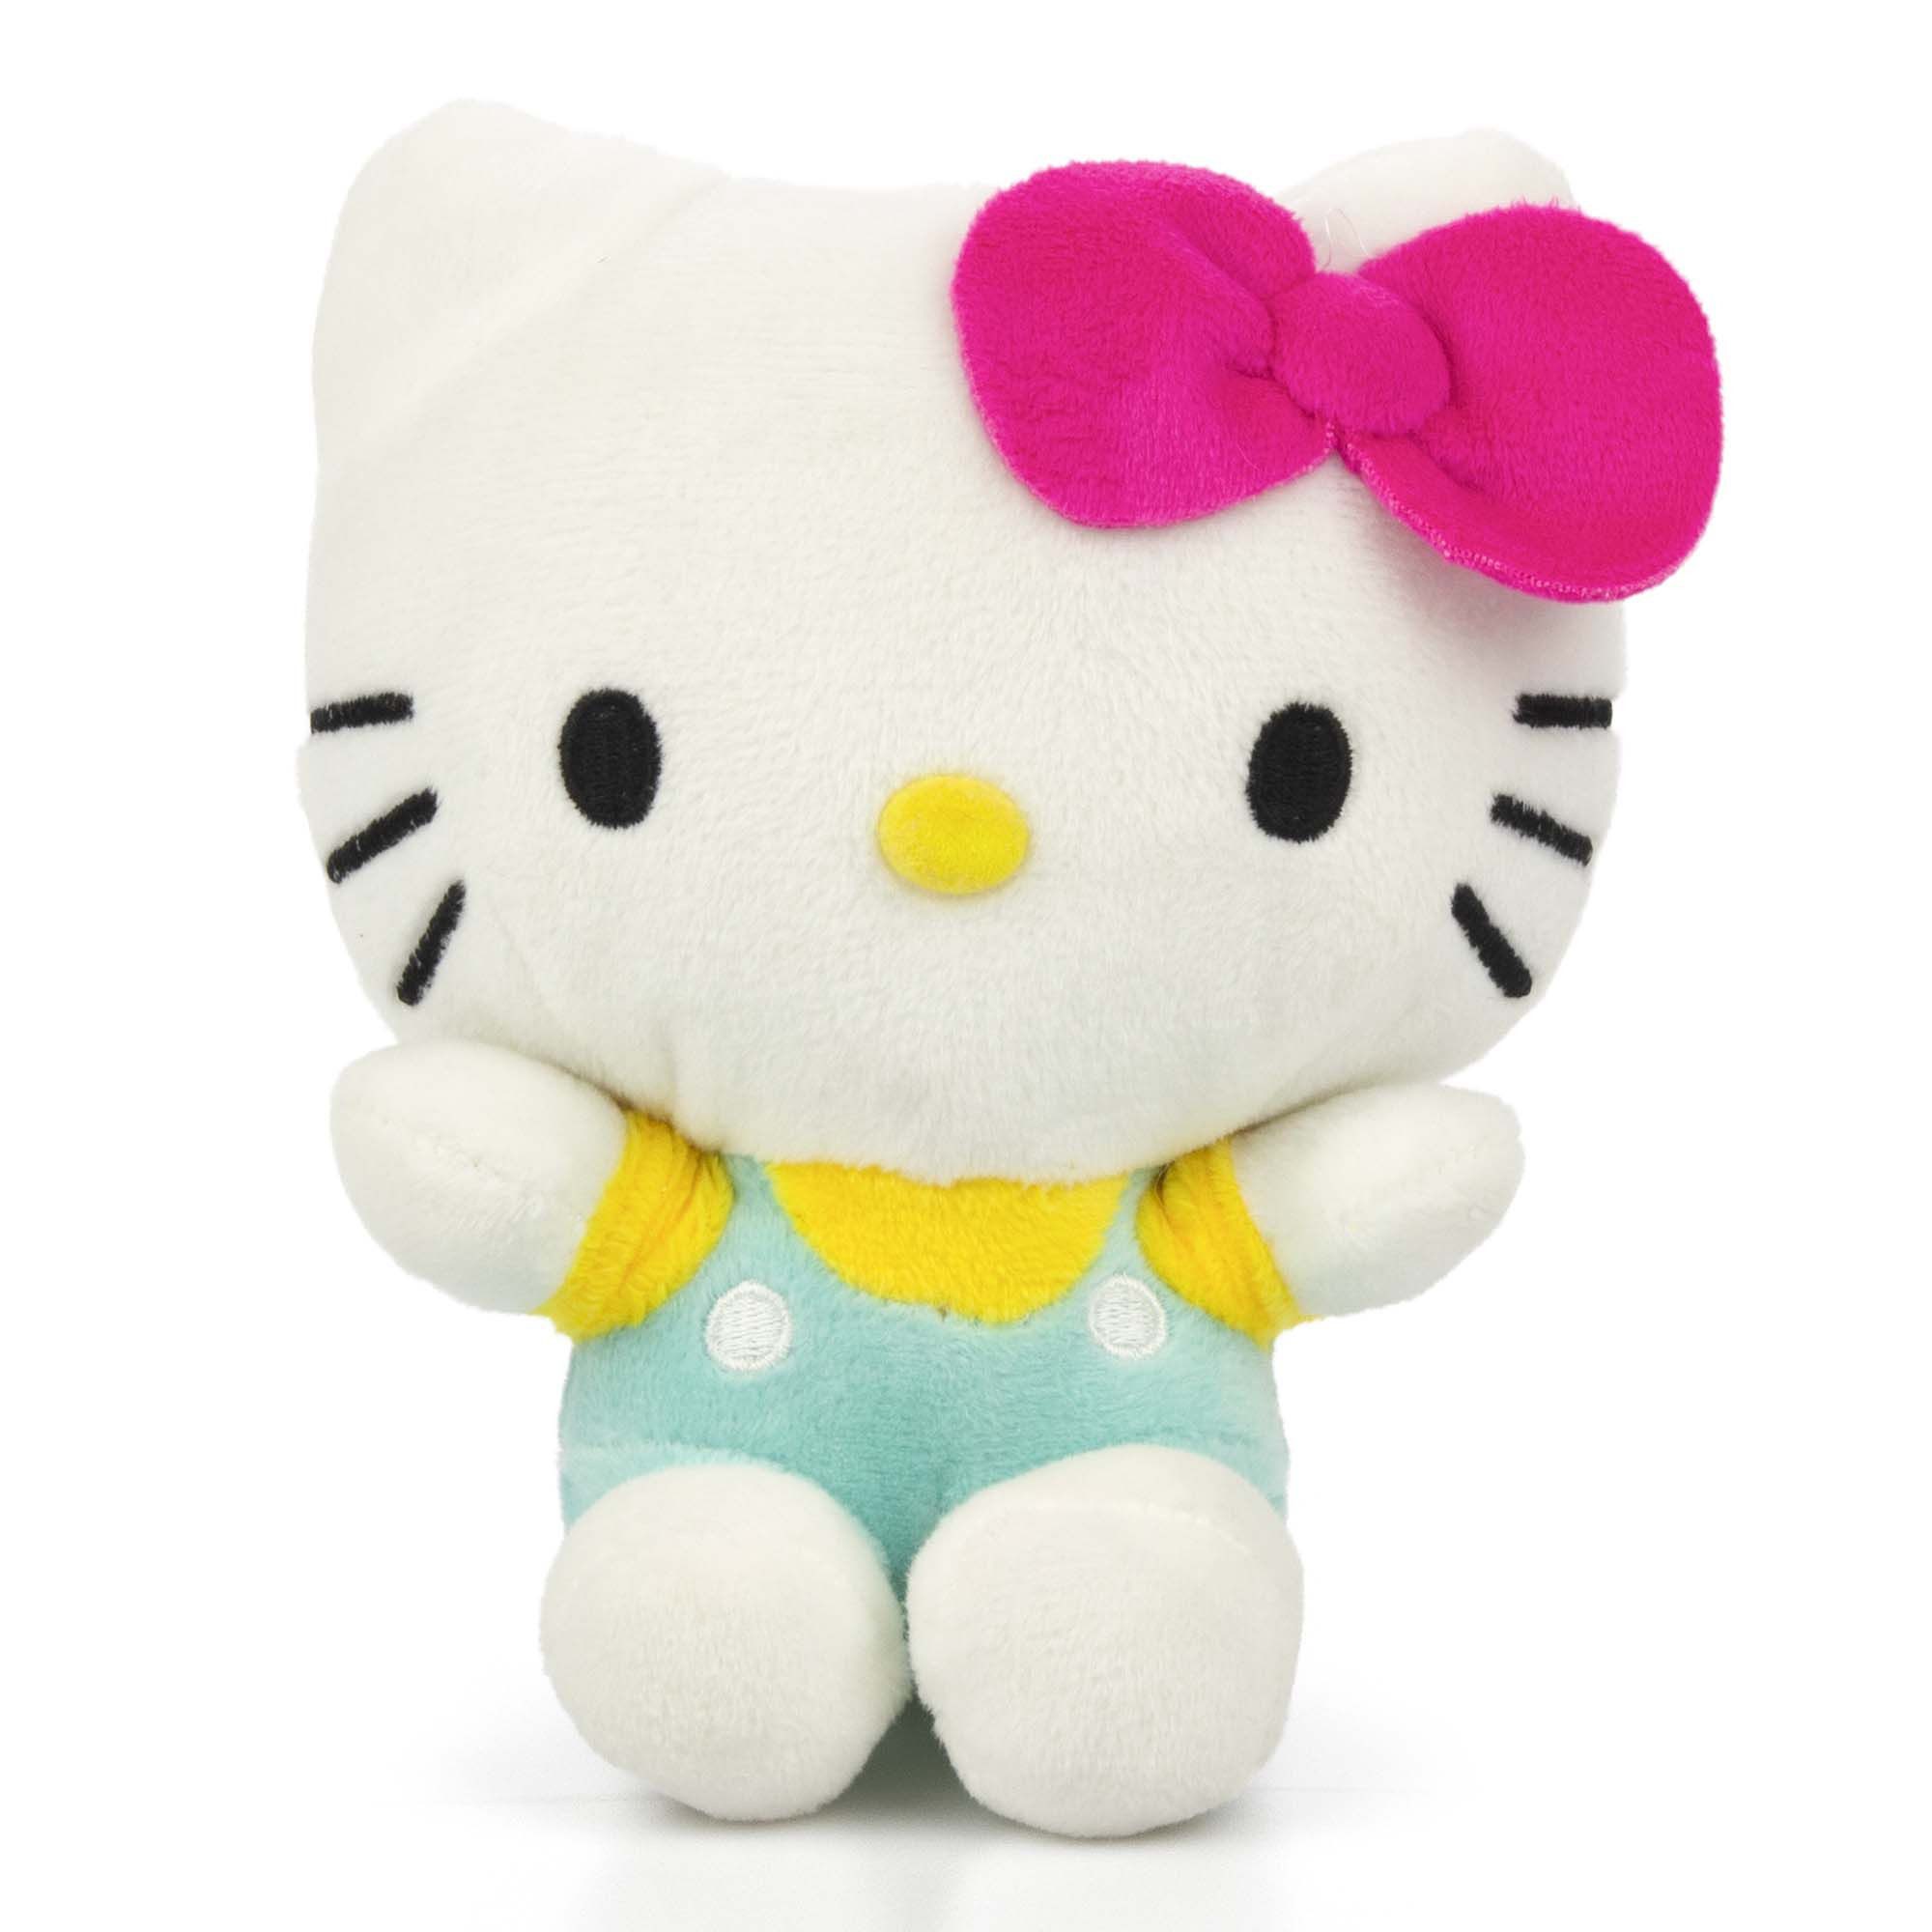 Tinisu Plüschfigur Hello Kitty Kuscheltier Kinder - 18 cm Plüschtier weiches Stofftier